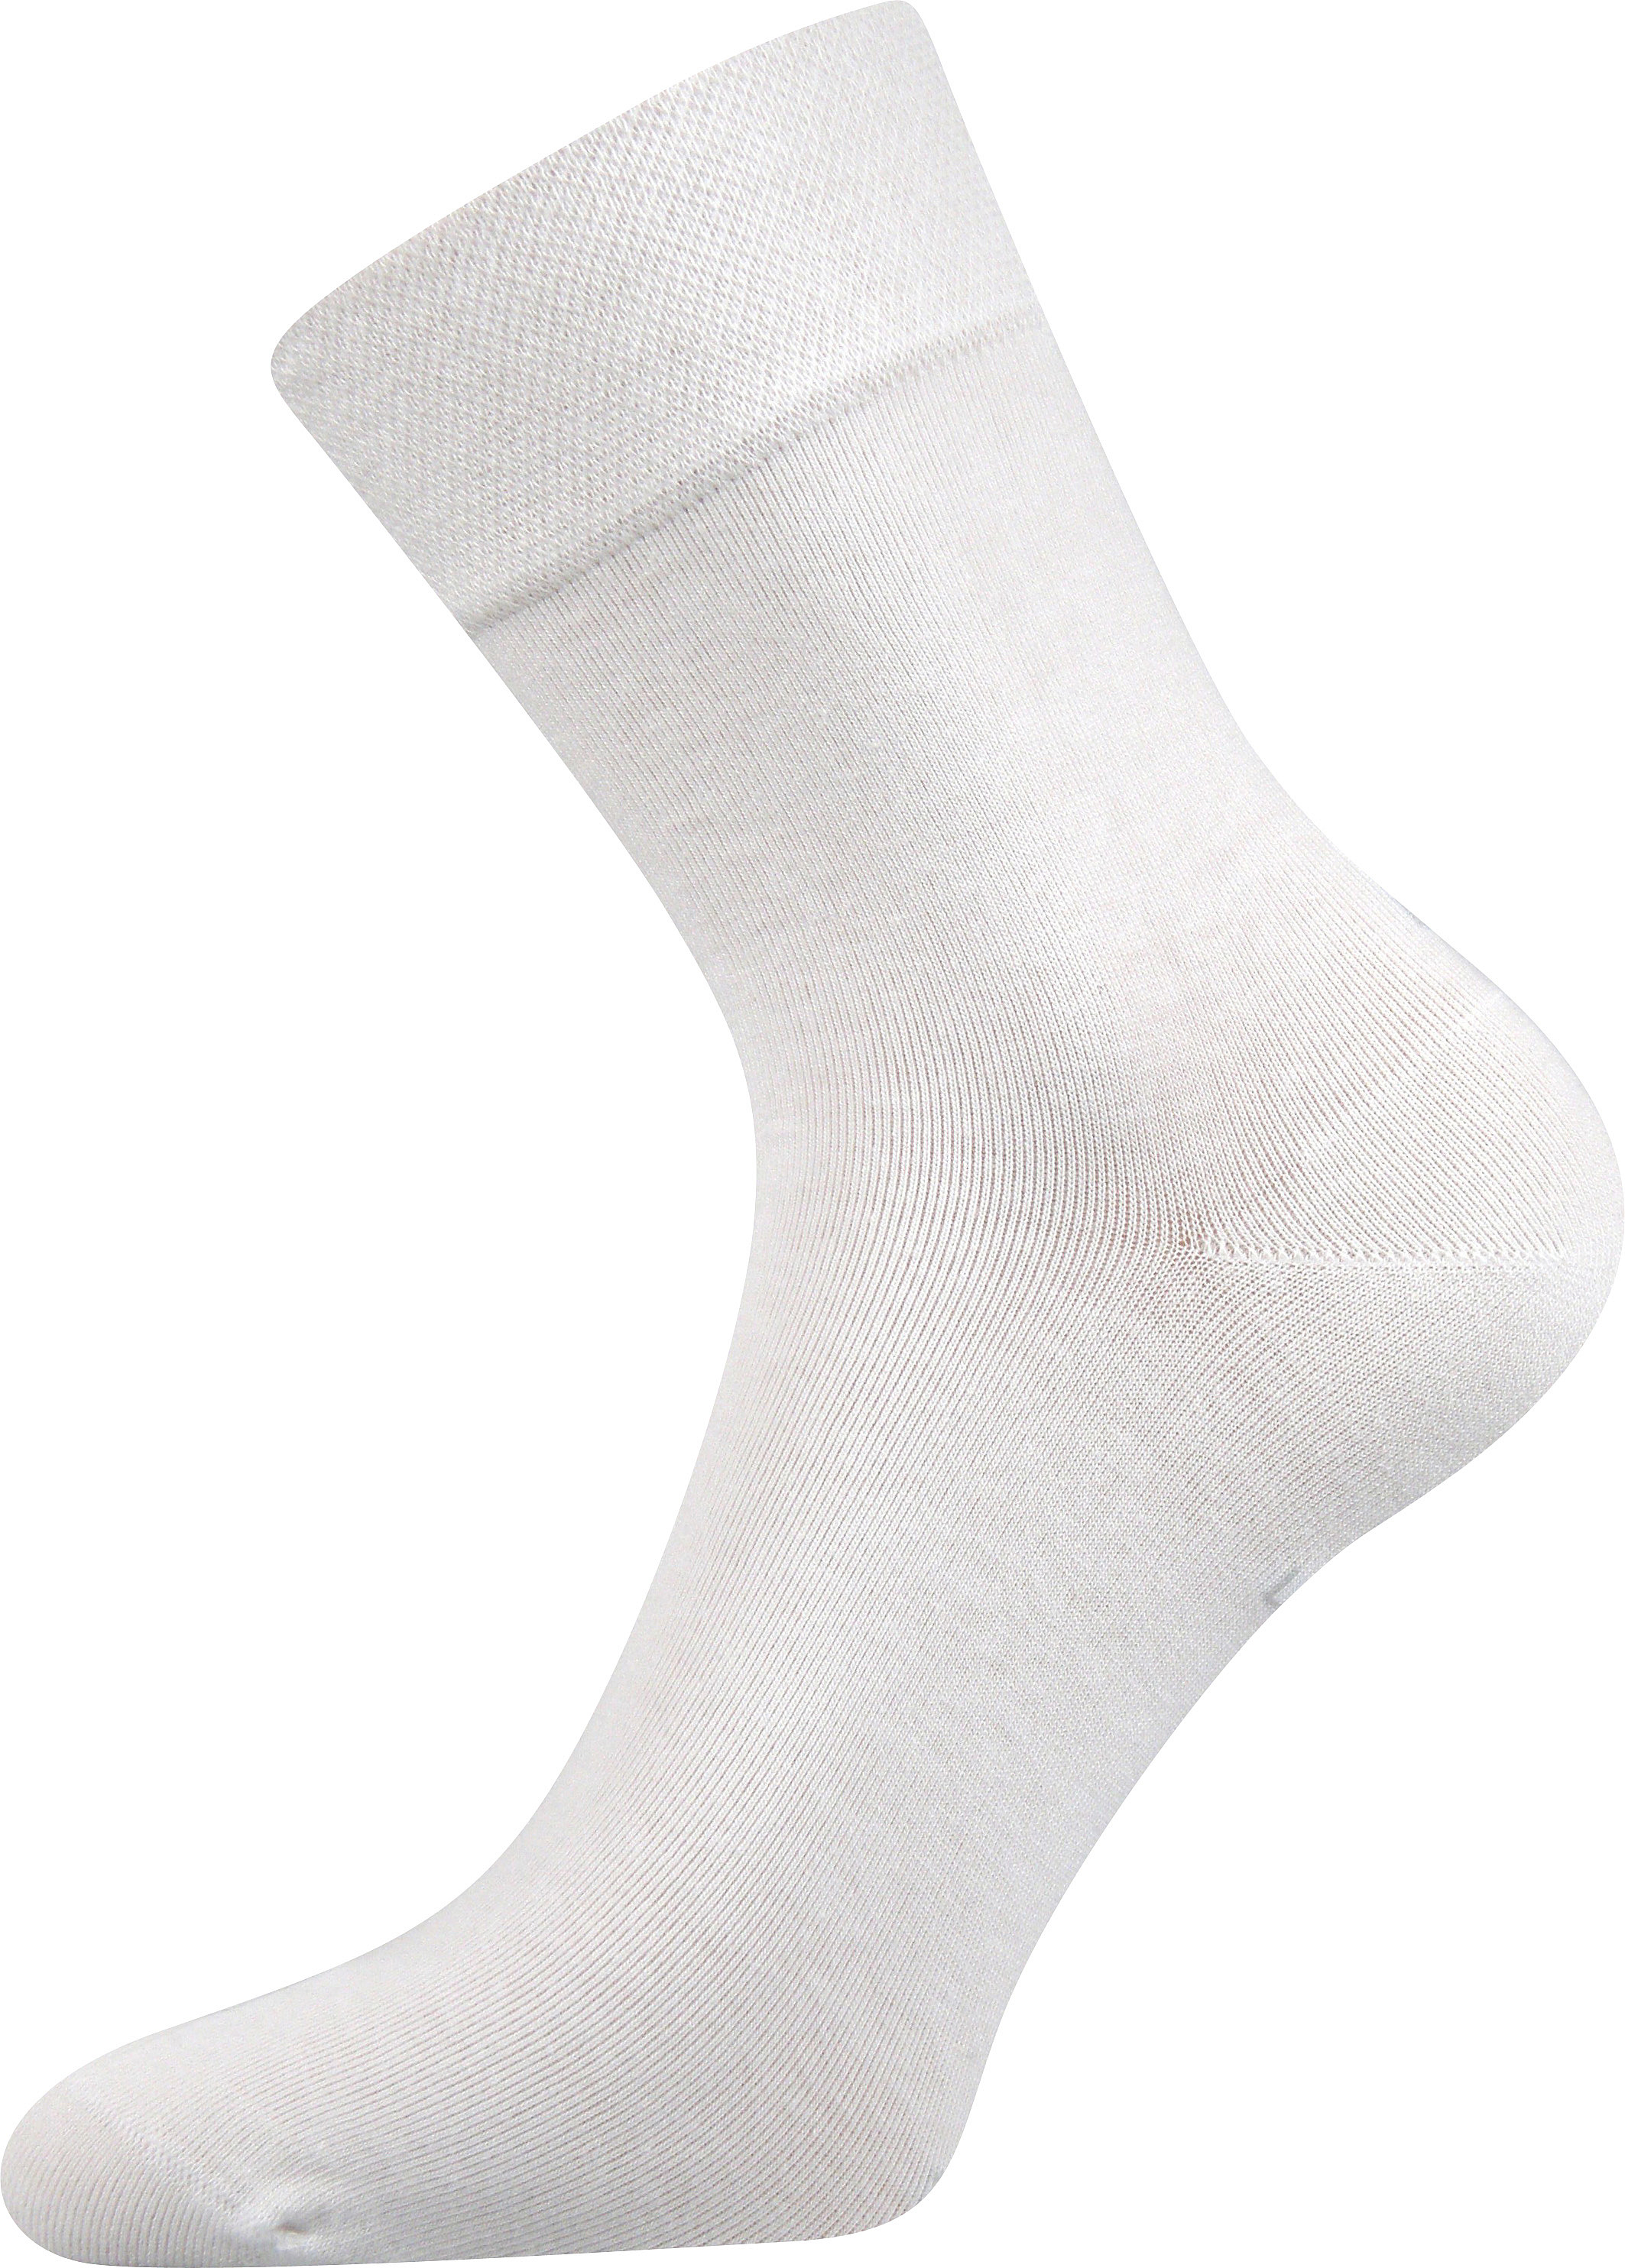 Ponožky společenské Lonka Haner - bílé, 39-42